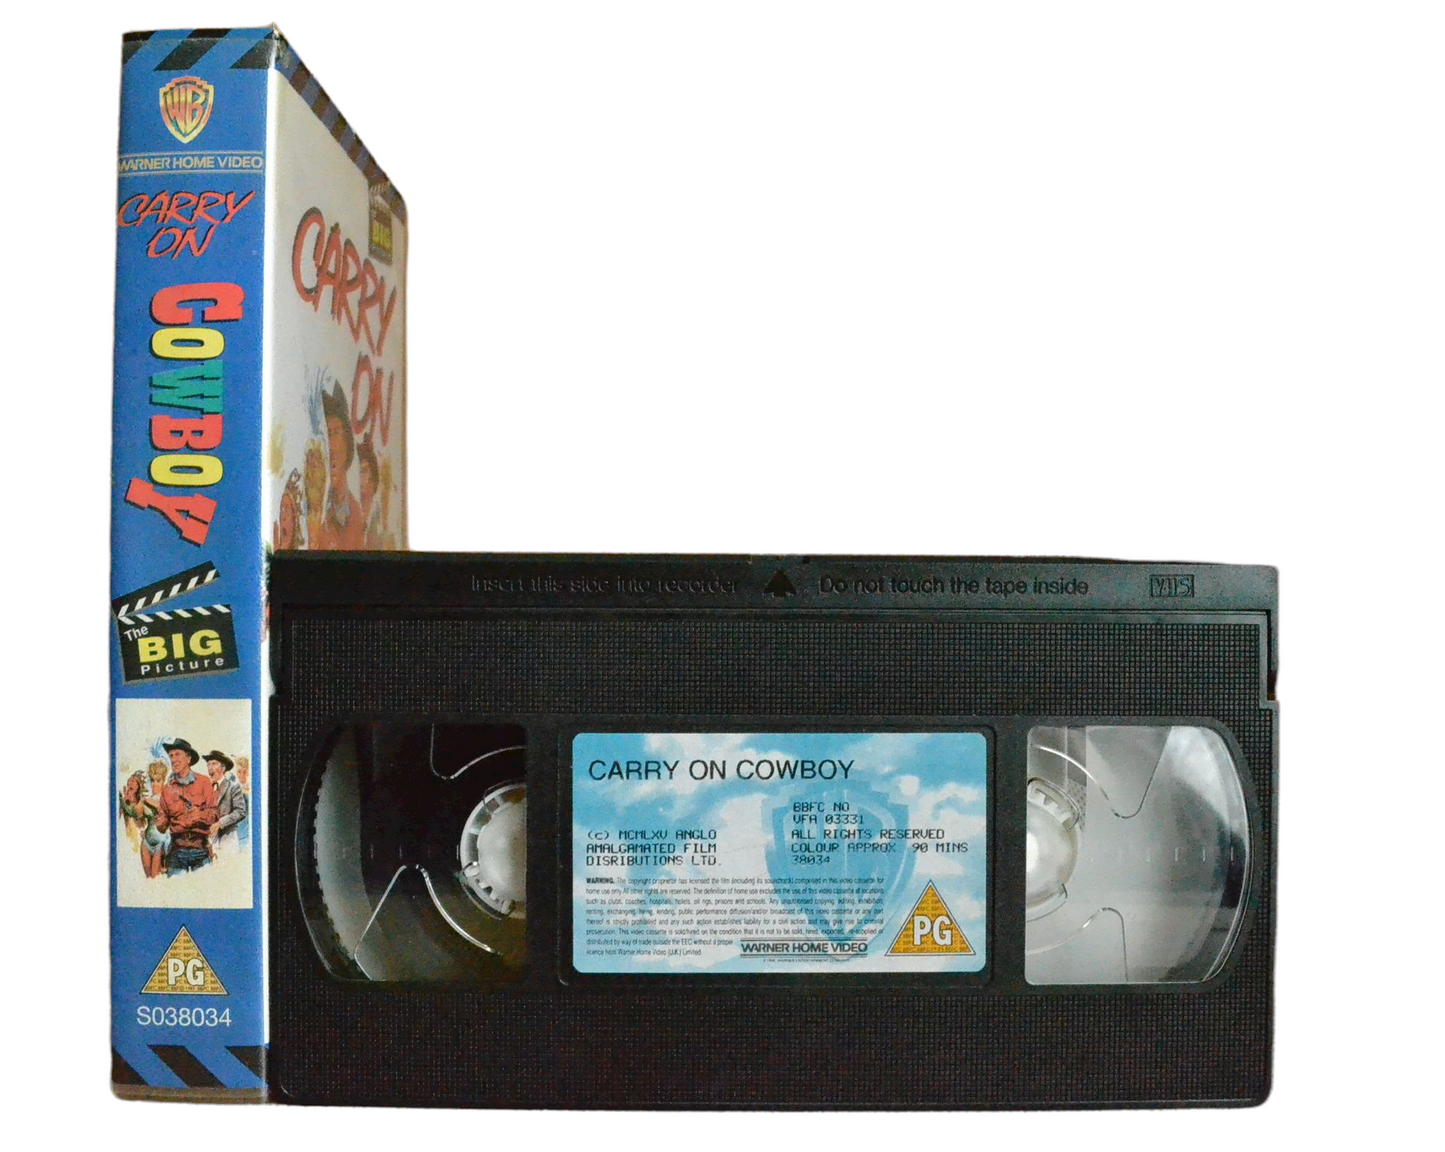 Carry On Cowboy - Sidney James - Warner Home Video - Vintage - Pal VHS-